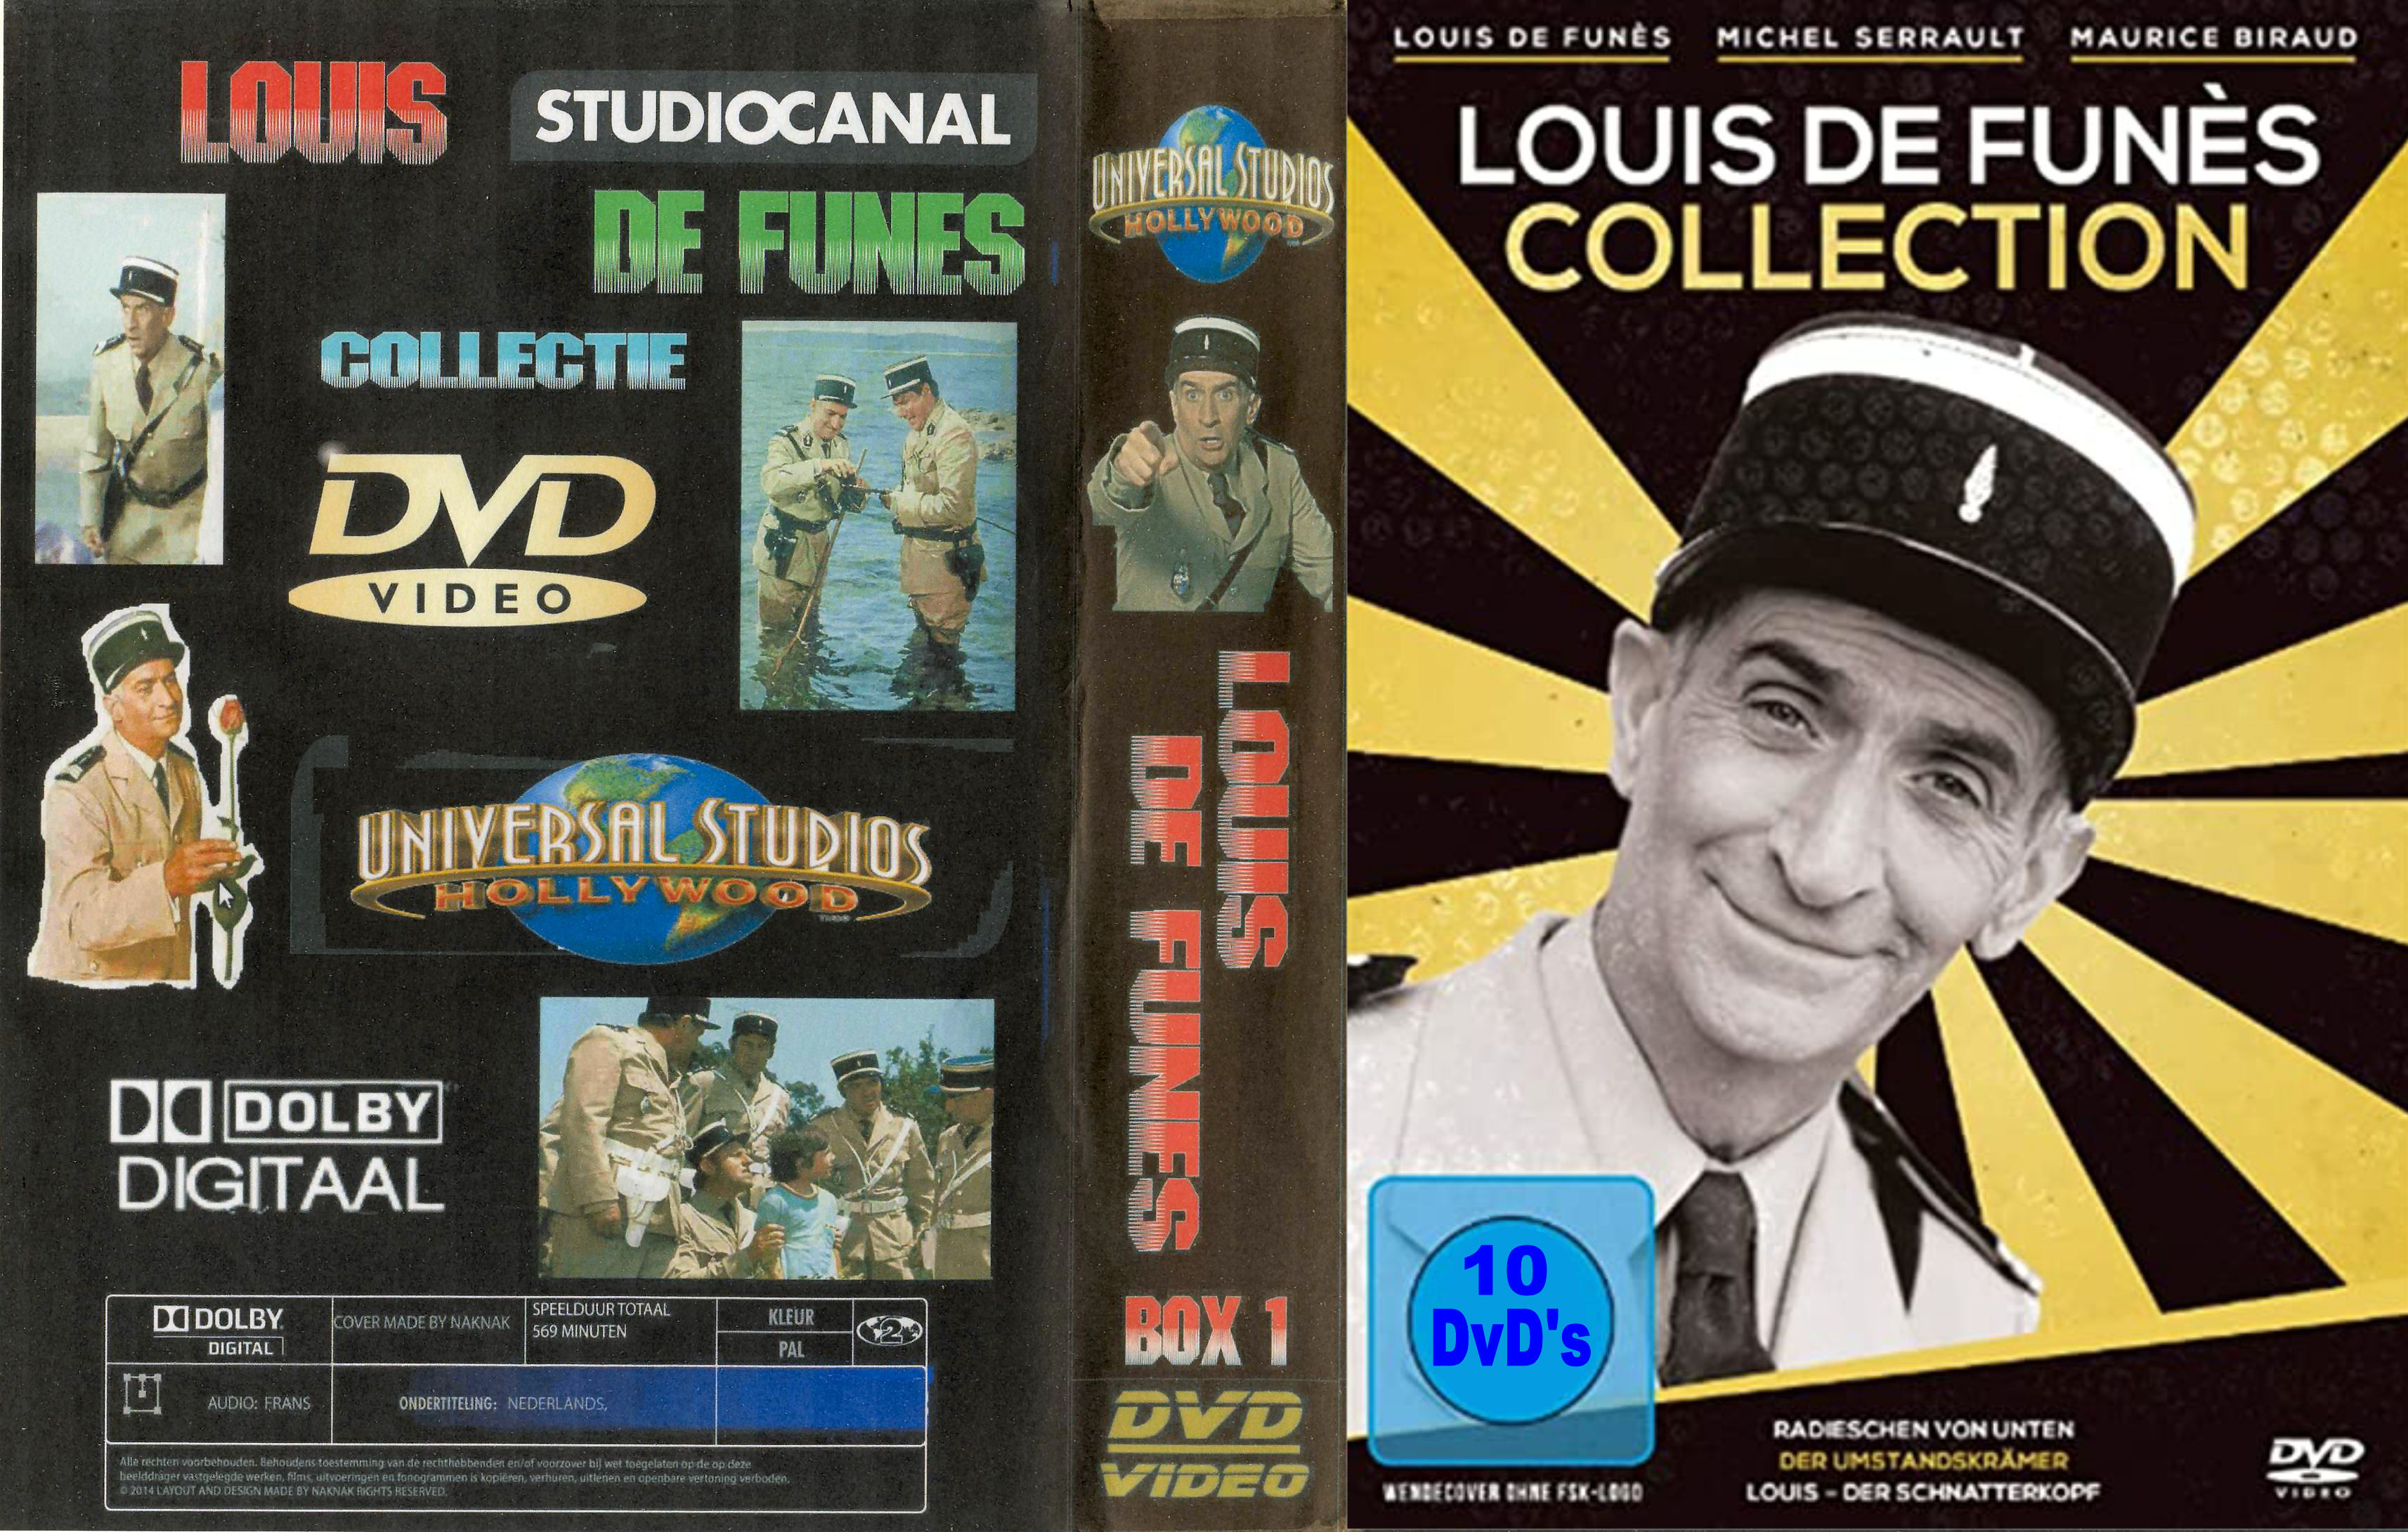 Louis de Funes Collectie ( 30 DvD's ) - DvD 6